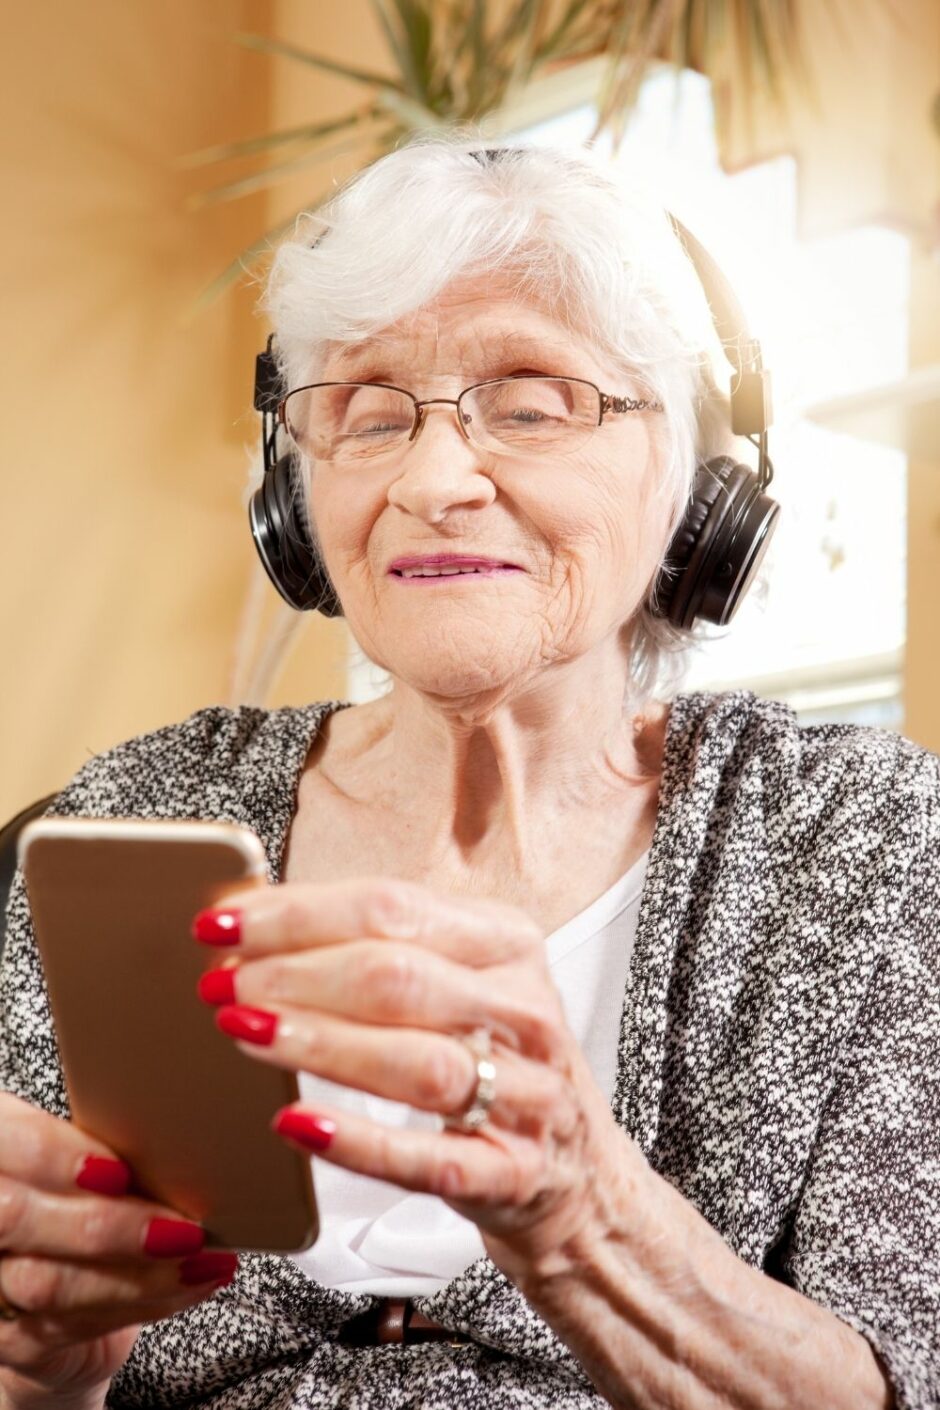 Easiest Smartphone for Seniors